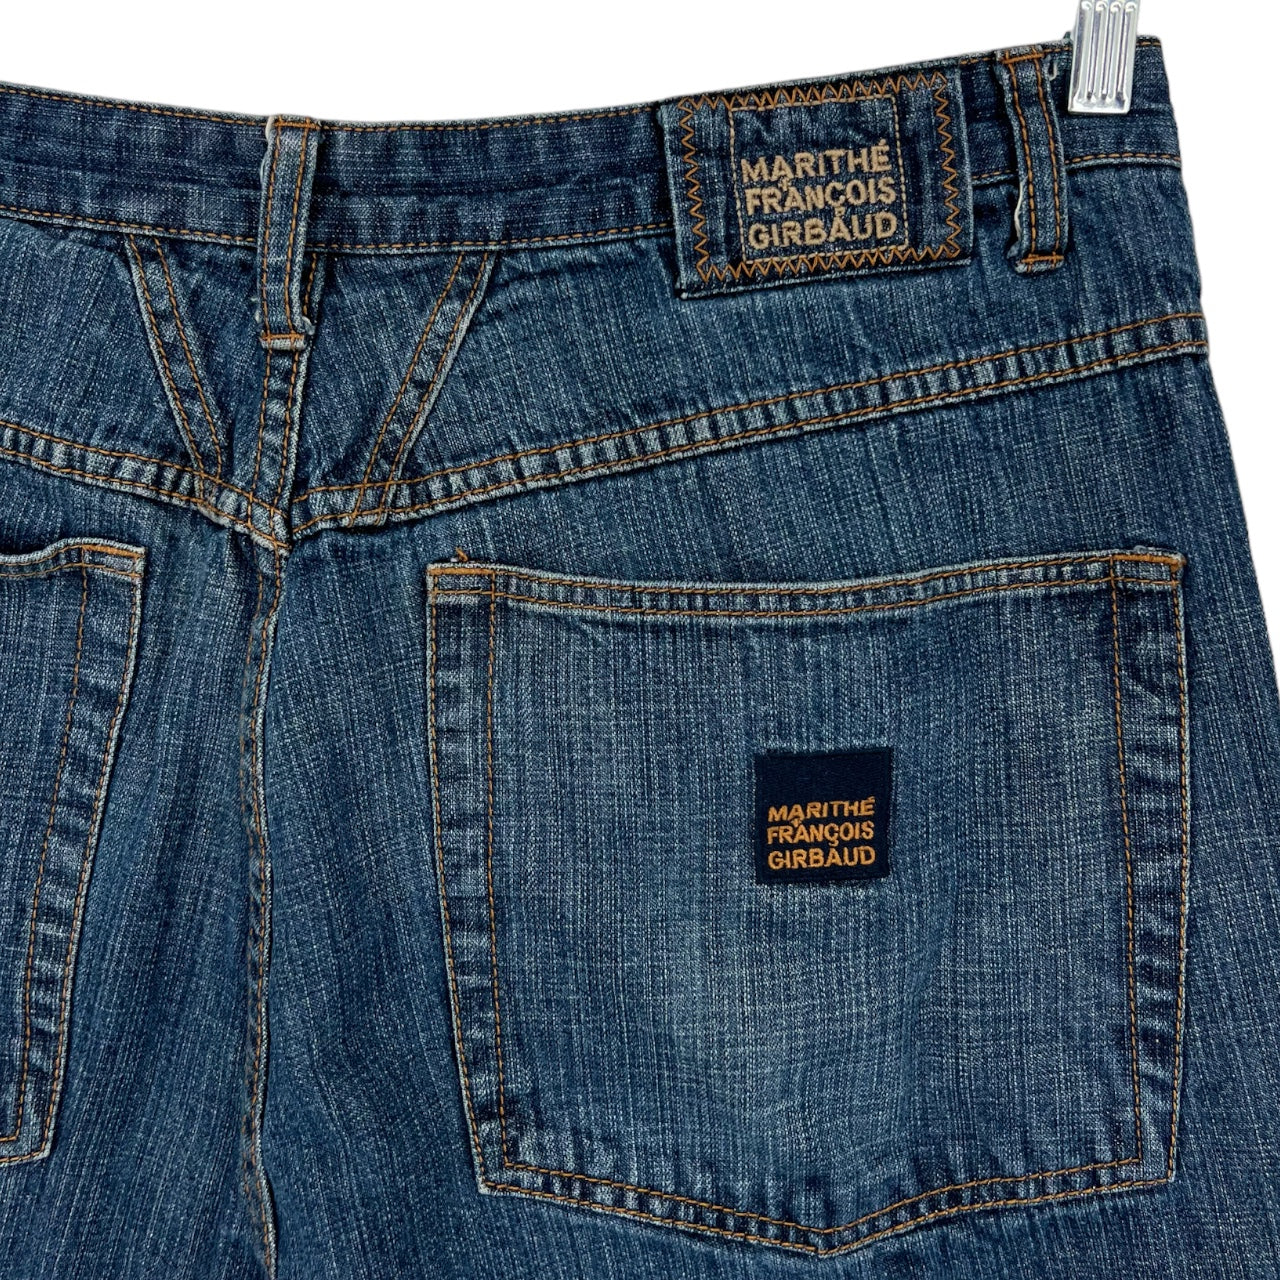 Vintage Marithe Francois Girbaud Men’s Baggy Paint Splatter Distressed Jeans Sz: 40M